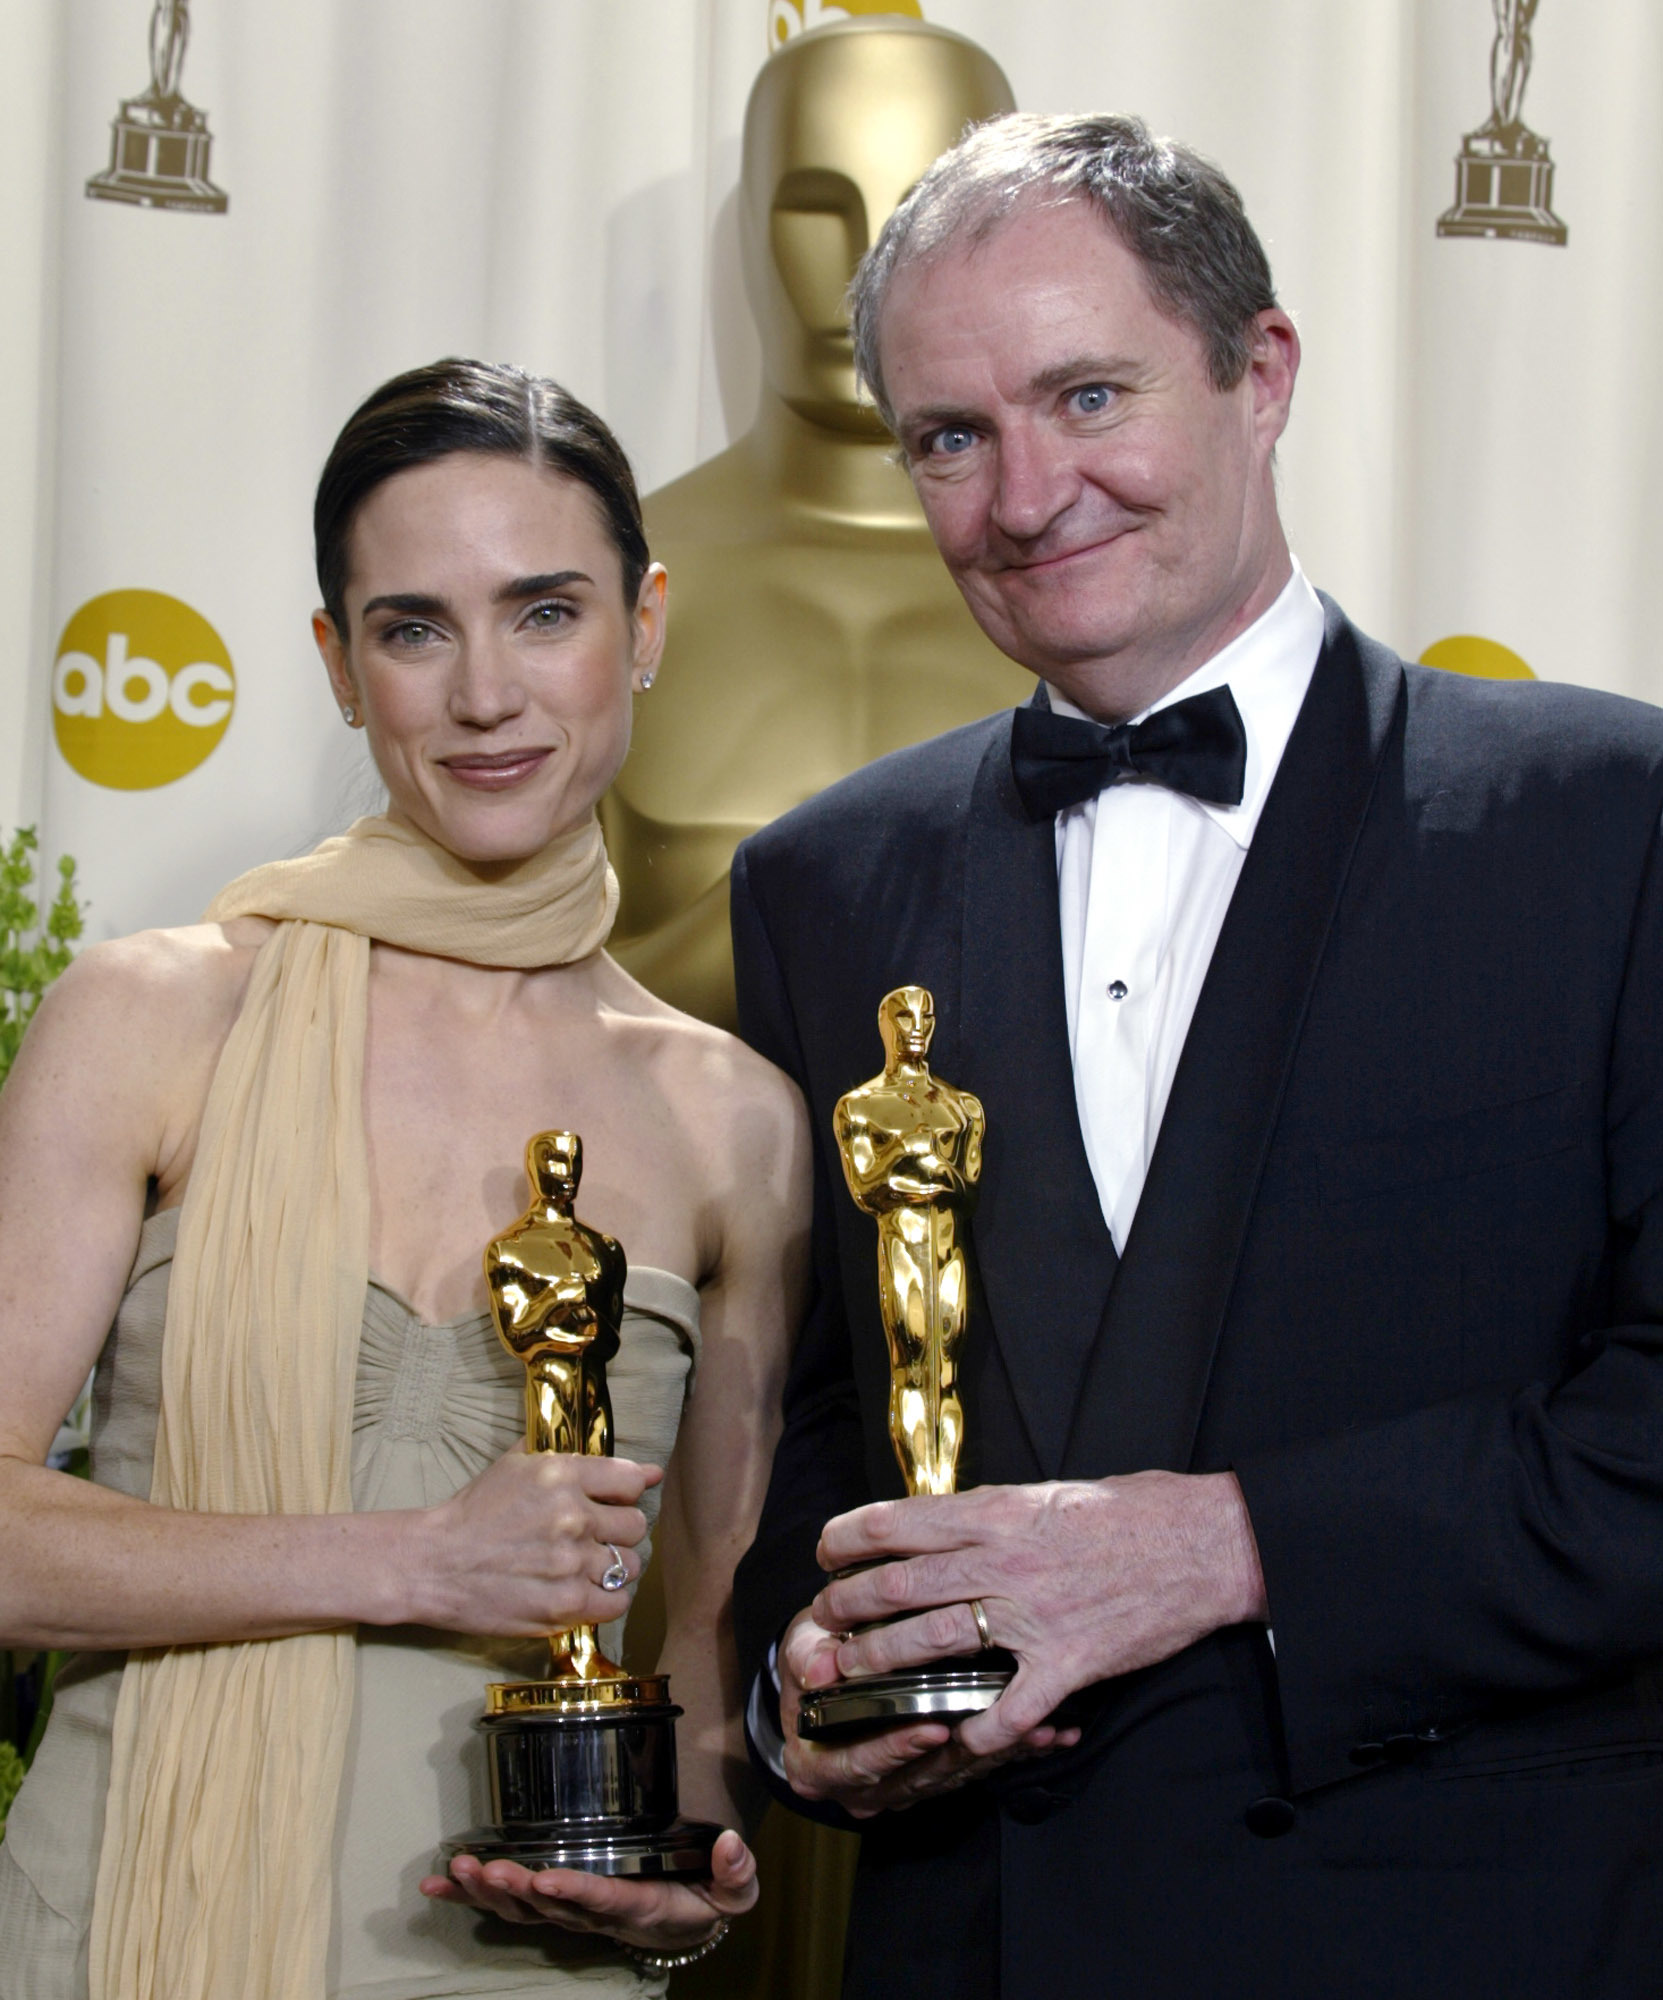 Im with Oscar: Academy Awards hosts through the years